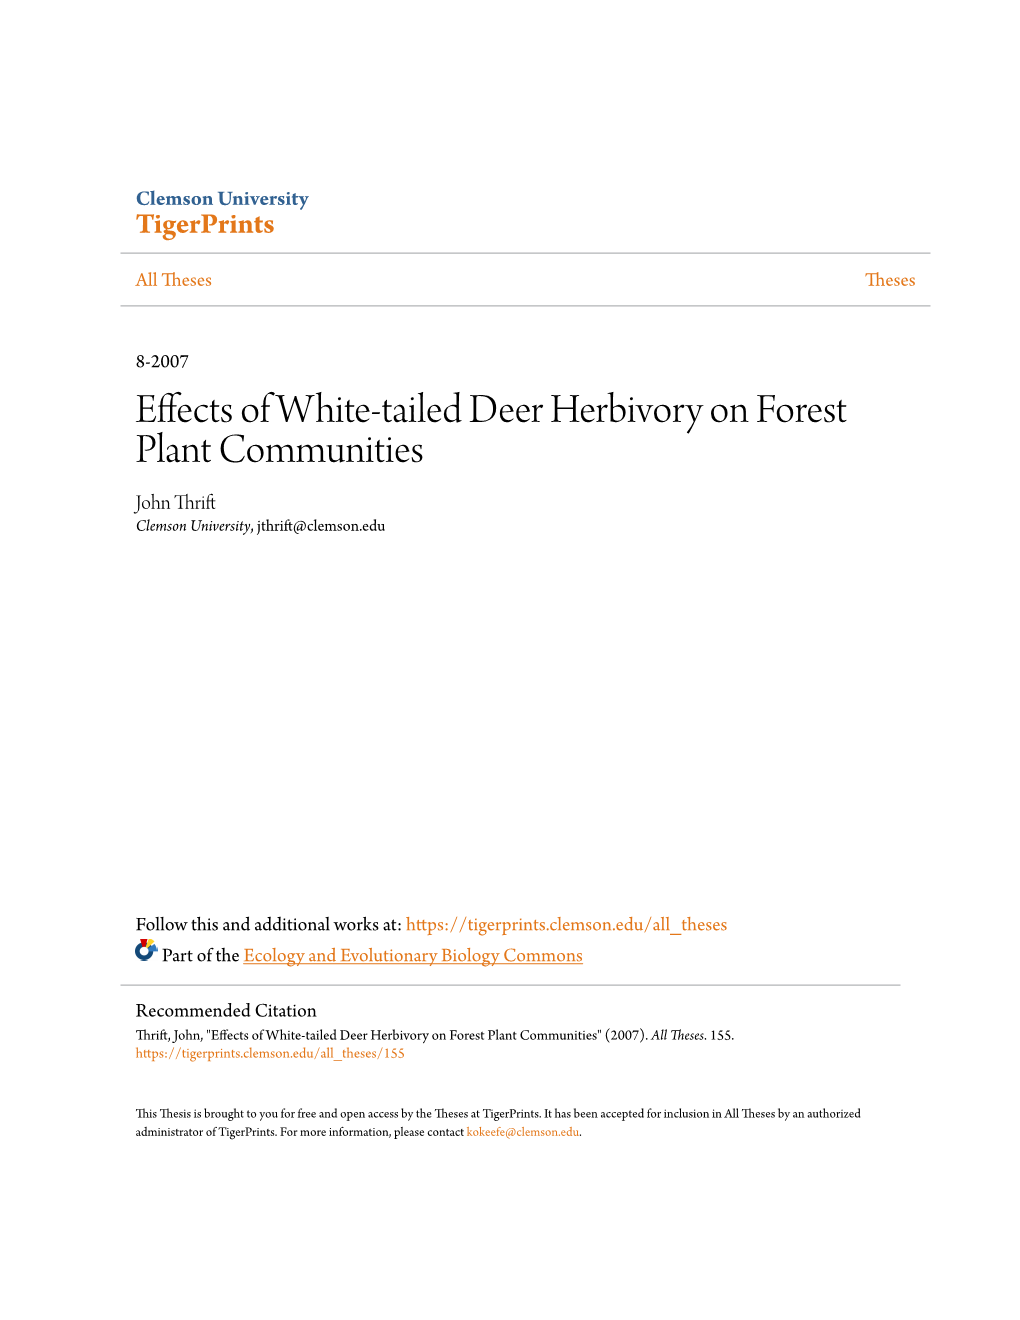 Effects of White-Tailed Deer Herbivory on Forest Plant Communities John Thrift Clemson University, Jthrift@Clemson.Edu